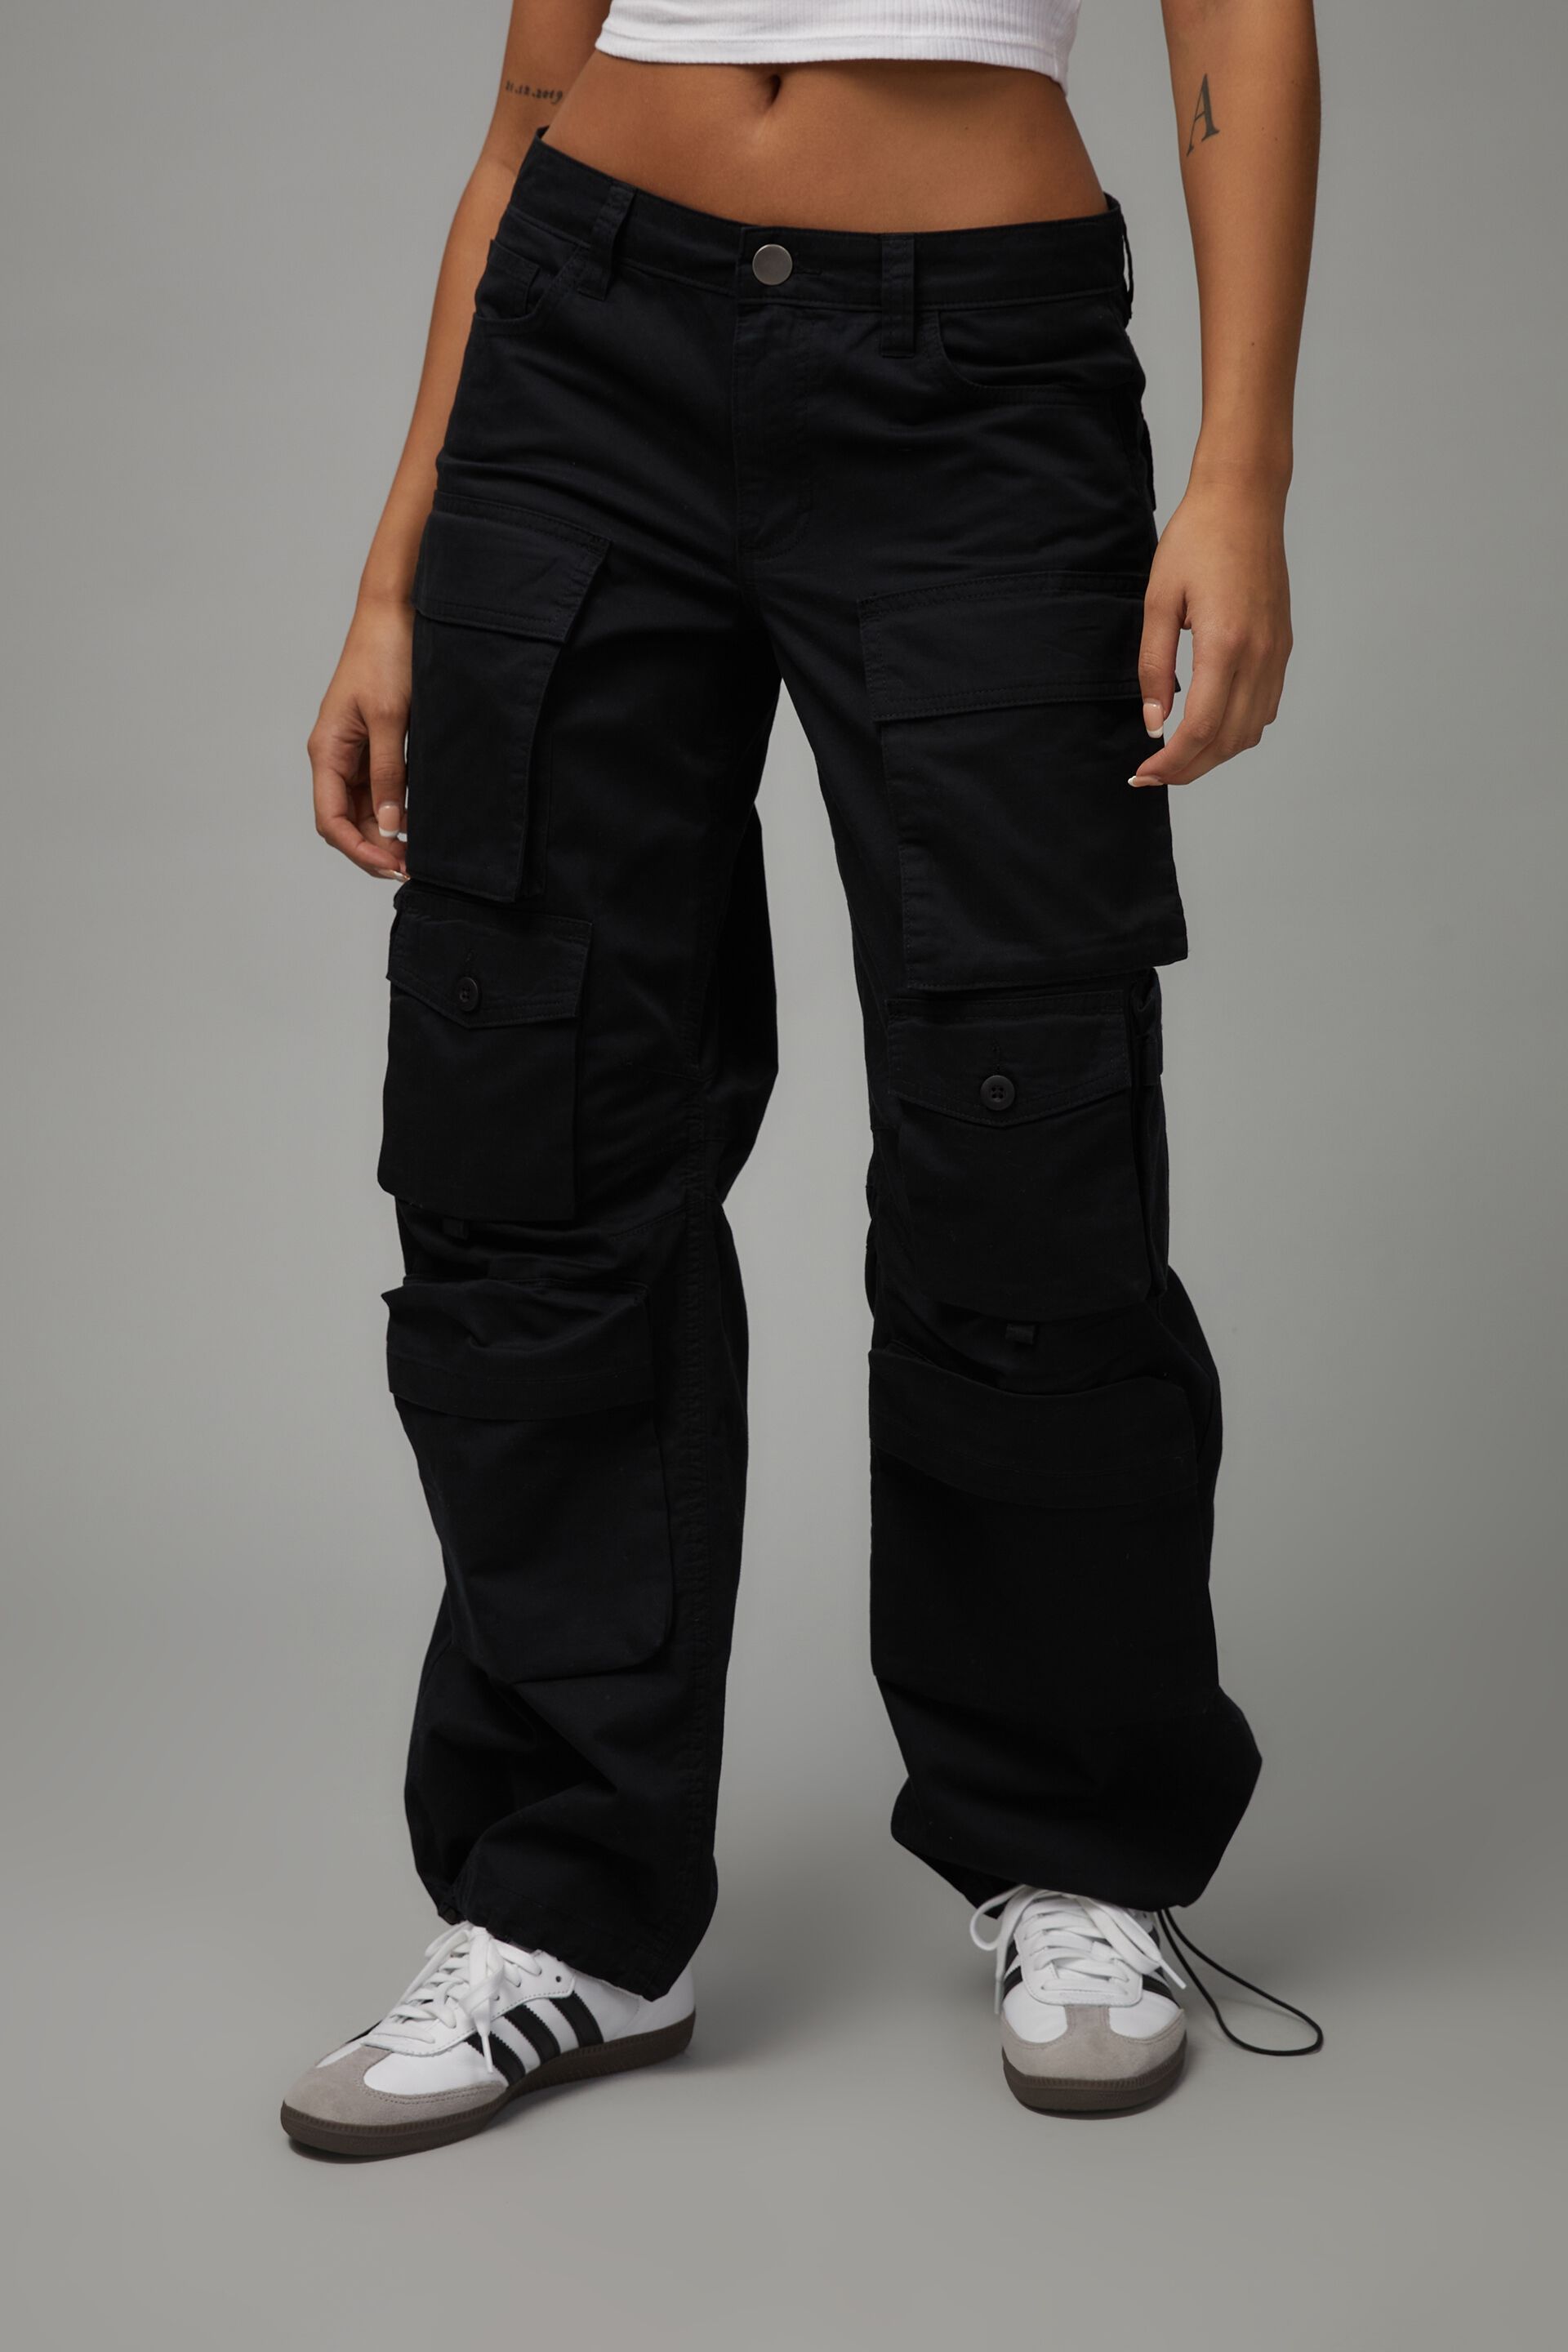 Buy G-Star Front Pocket Slim Cargo Pants Dark Black 36 at Amazon.in